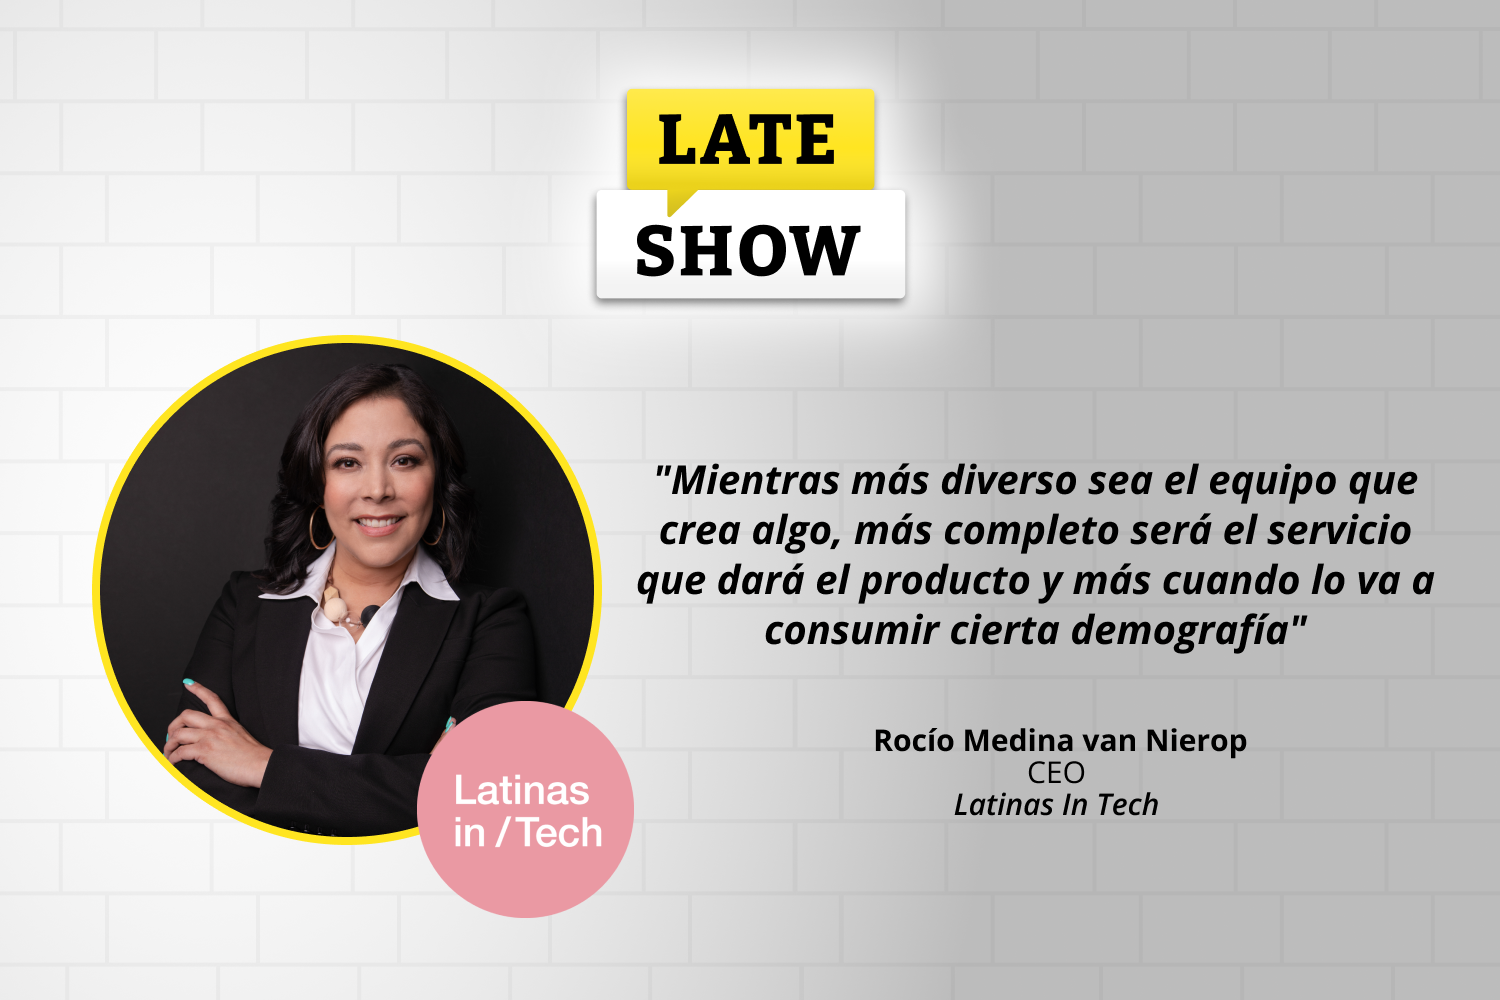 En este nuevo episodio del Late Show de Laboratoria conversamos con Rocío Medina van Nierop, CEO de Latinas in Tech,  el rol de las mujeres en tecnología y su impacto en el desarrollo de productos y servicios más inclusivos.